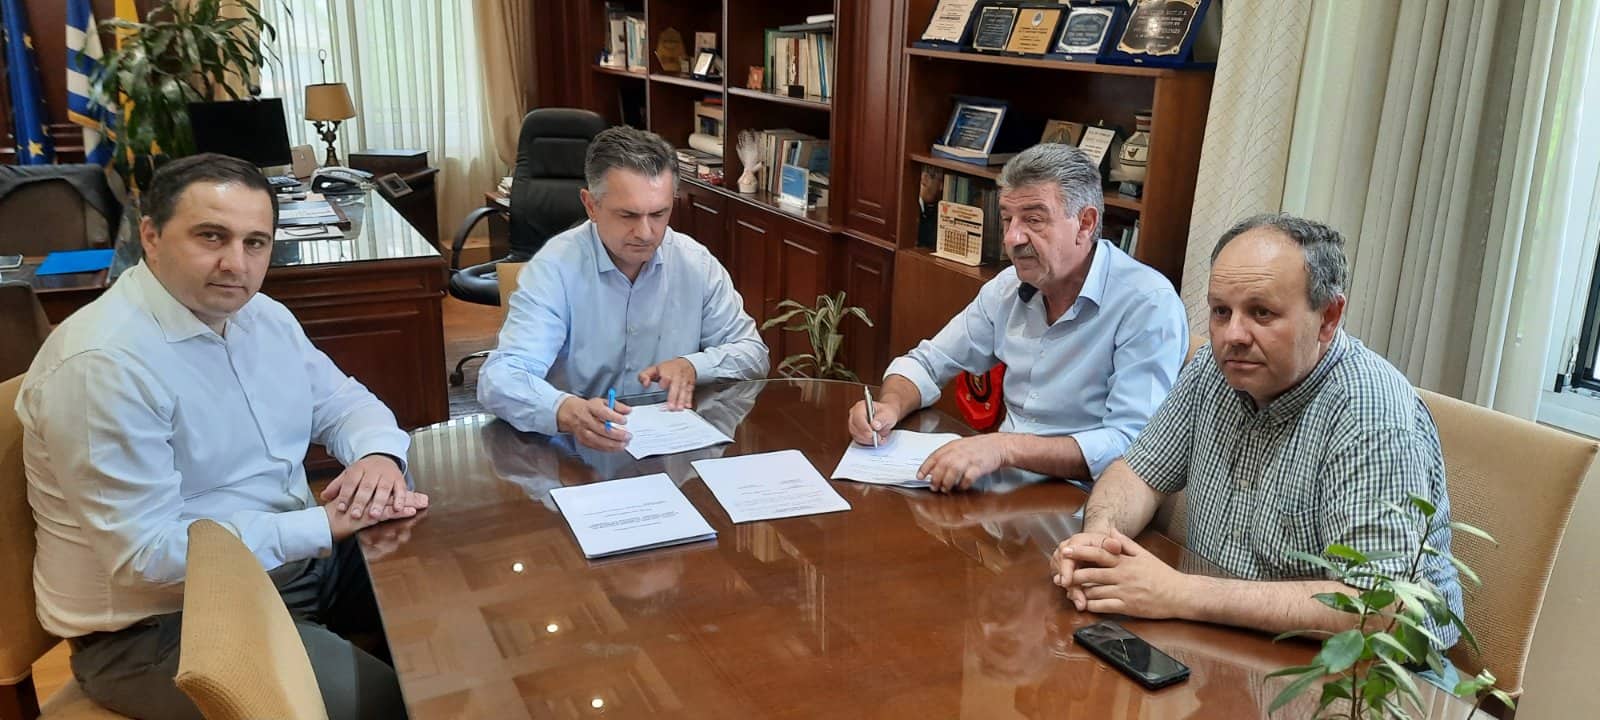 Υπογράφηκε η Προγραμματική Σύμβαση προϋπολογισμού 10.000.000,00€ (με ΦΠΑ) για το έργο «Βελτίωση πρόσβασης σταβλικών και βιομηχανικών εγκαταστάσεων Δήμου Γρεβενών – Α’ Φάση»  από τον Περιφερειάρχη Δυτικής Μακεδονίας Γιώργο Κασαπίδη